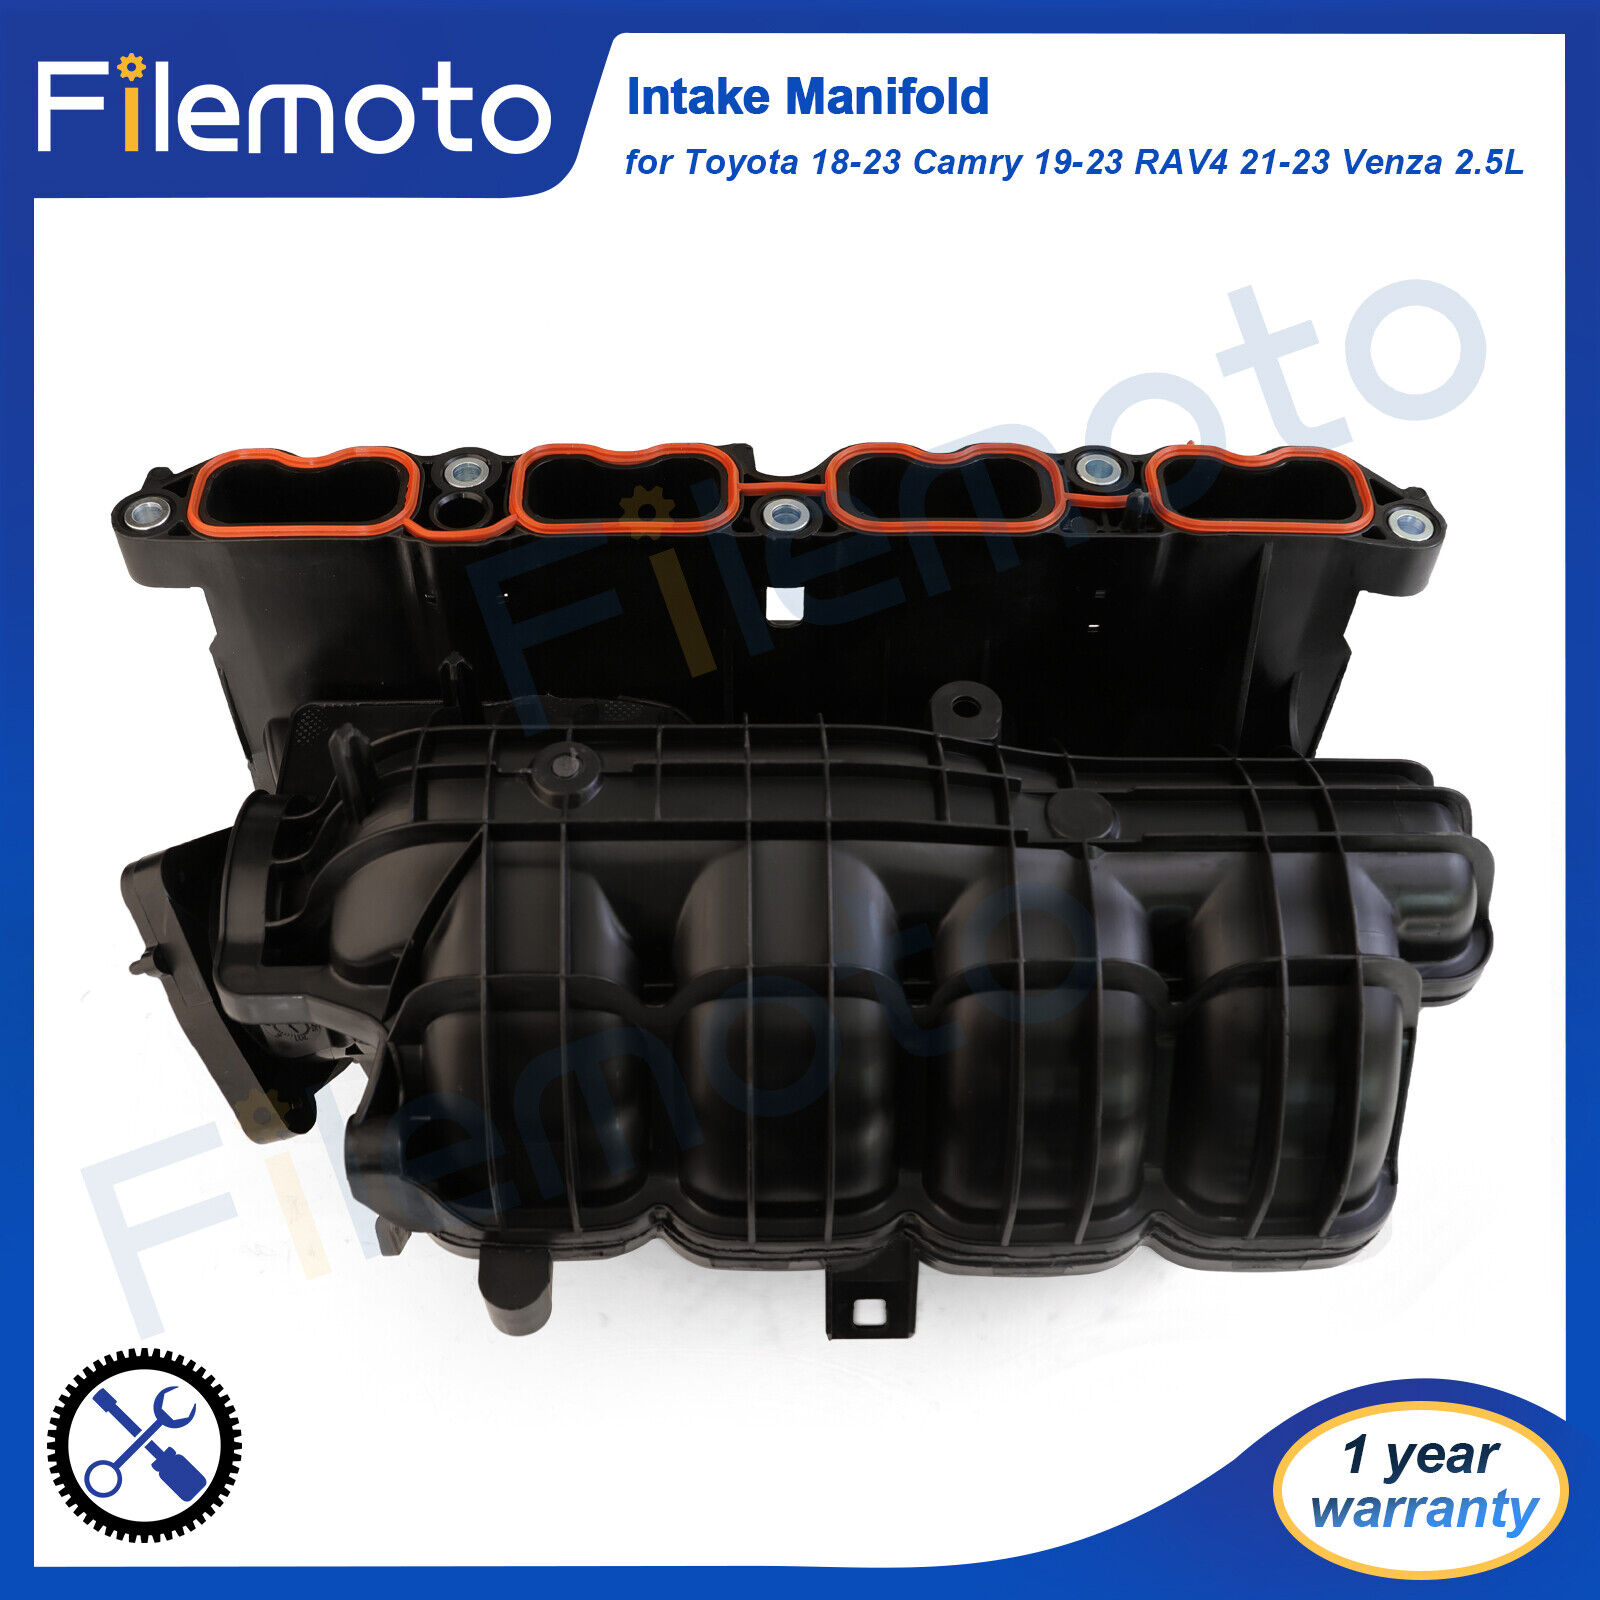 Intake Manifold for Toyota 18-23 Camry 19-23 RAV4 21-23 Venza hybrid 2.5L